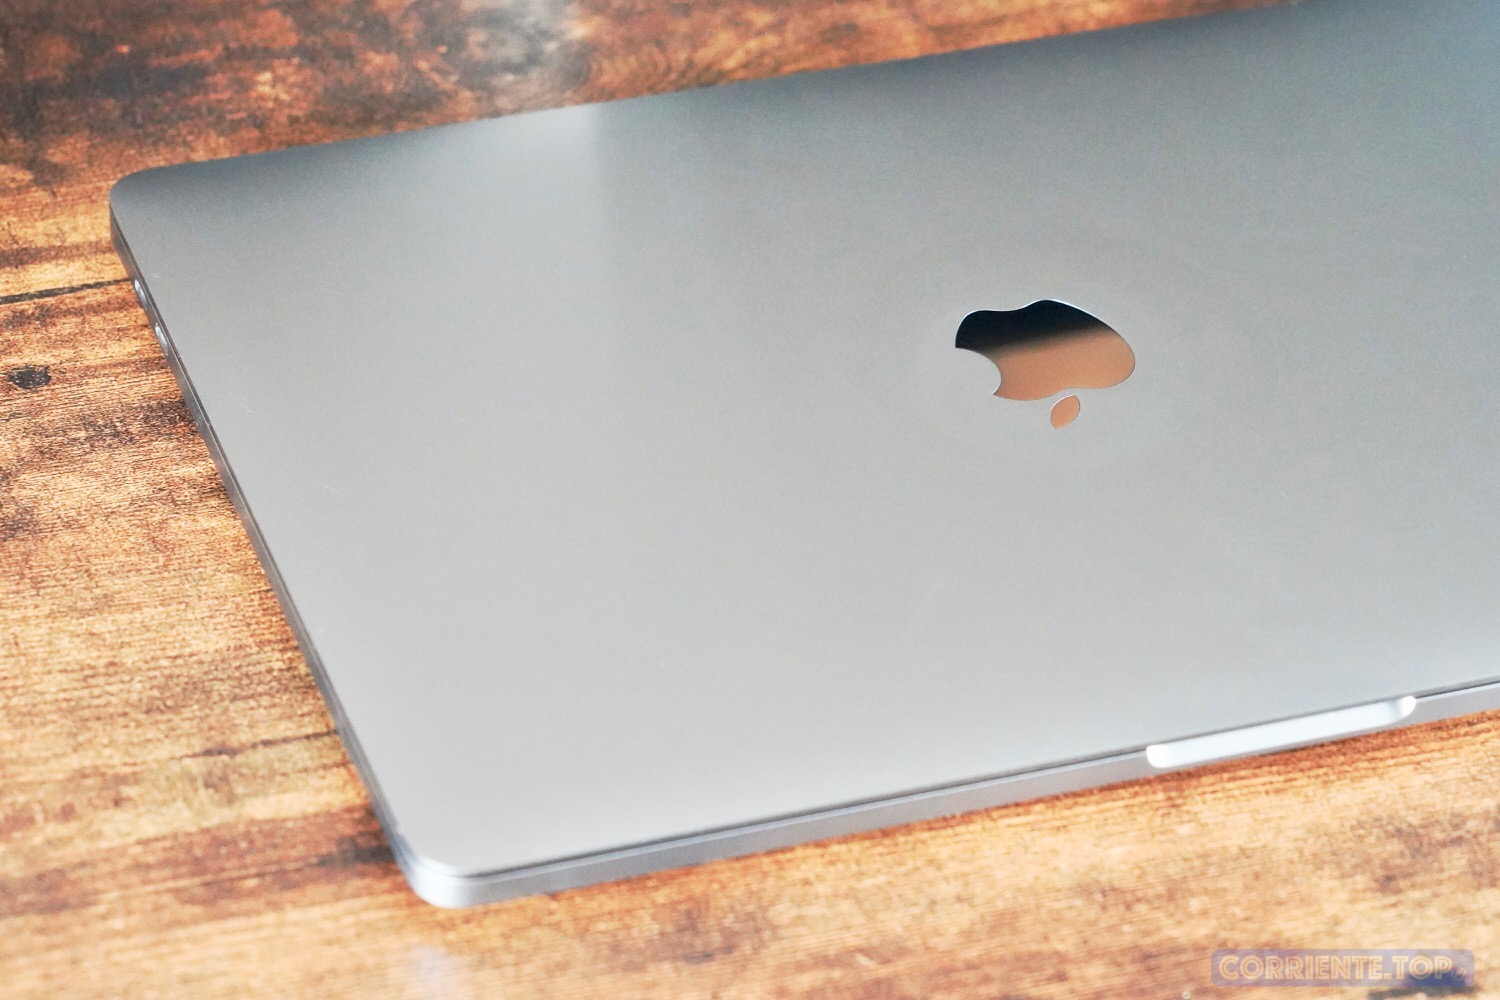 【徹底レビュー】MacBook Pro 2019 13インチ：性能向上とキーボードの改良でいよいよ完成体に。2018年モデルとの比較も